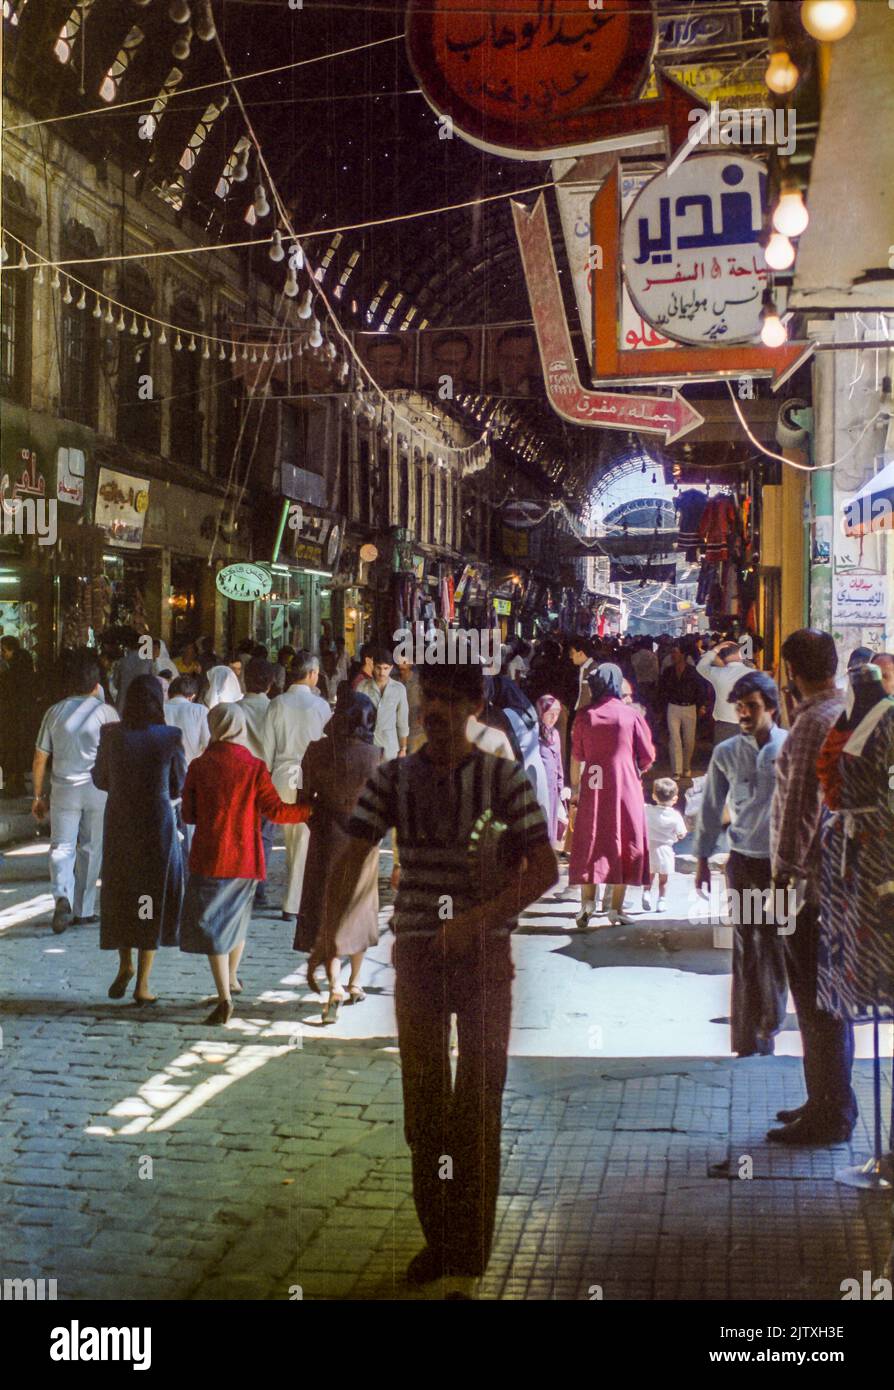 Bazaar scene in Damascus, Syria, 1985 Stock Photo